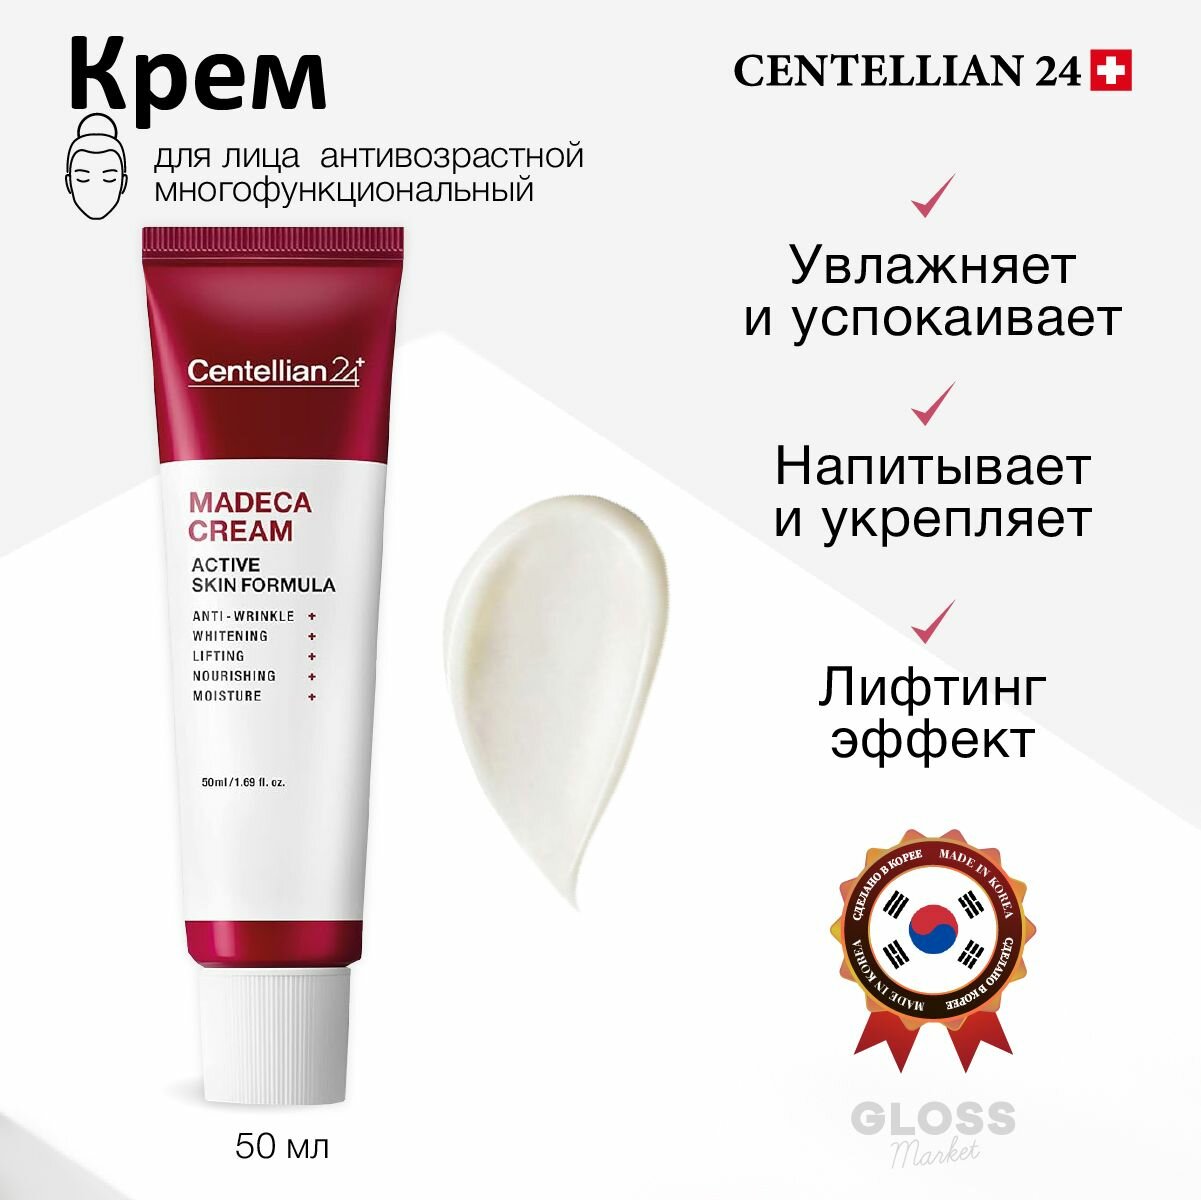 Centellian24 Крем антивозрастной многофункциональный Madeca Cream Active Formula (Season5) 50 мл